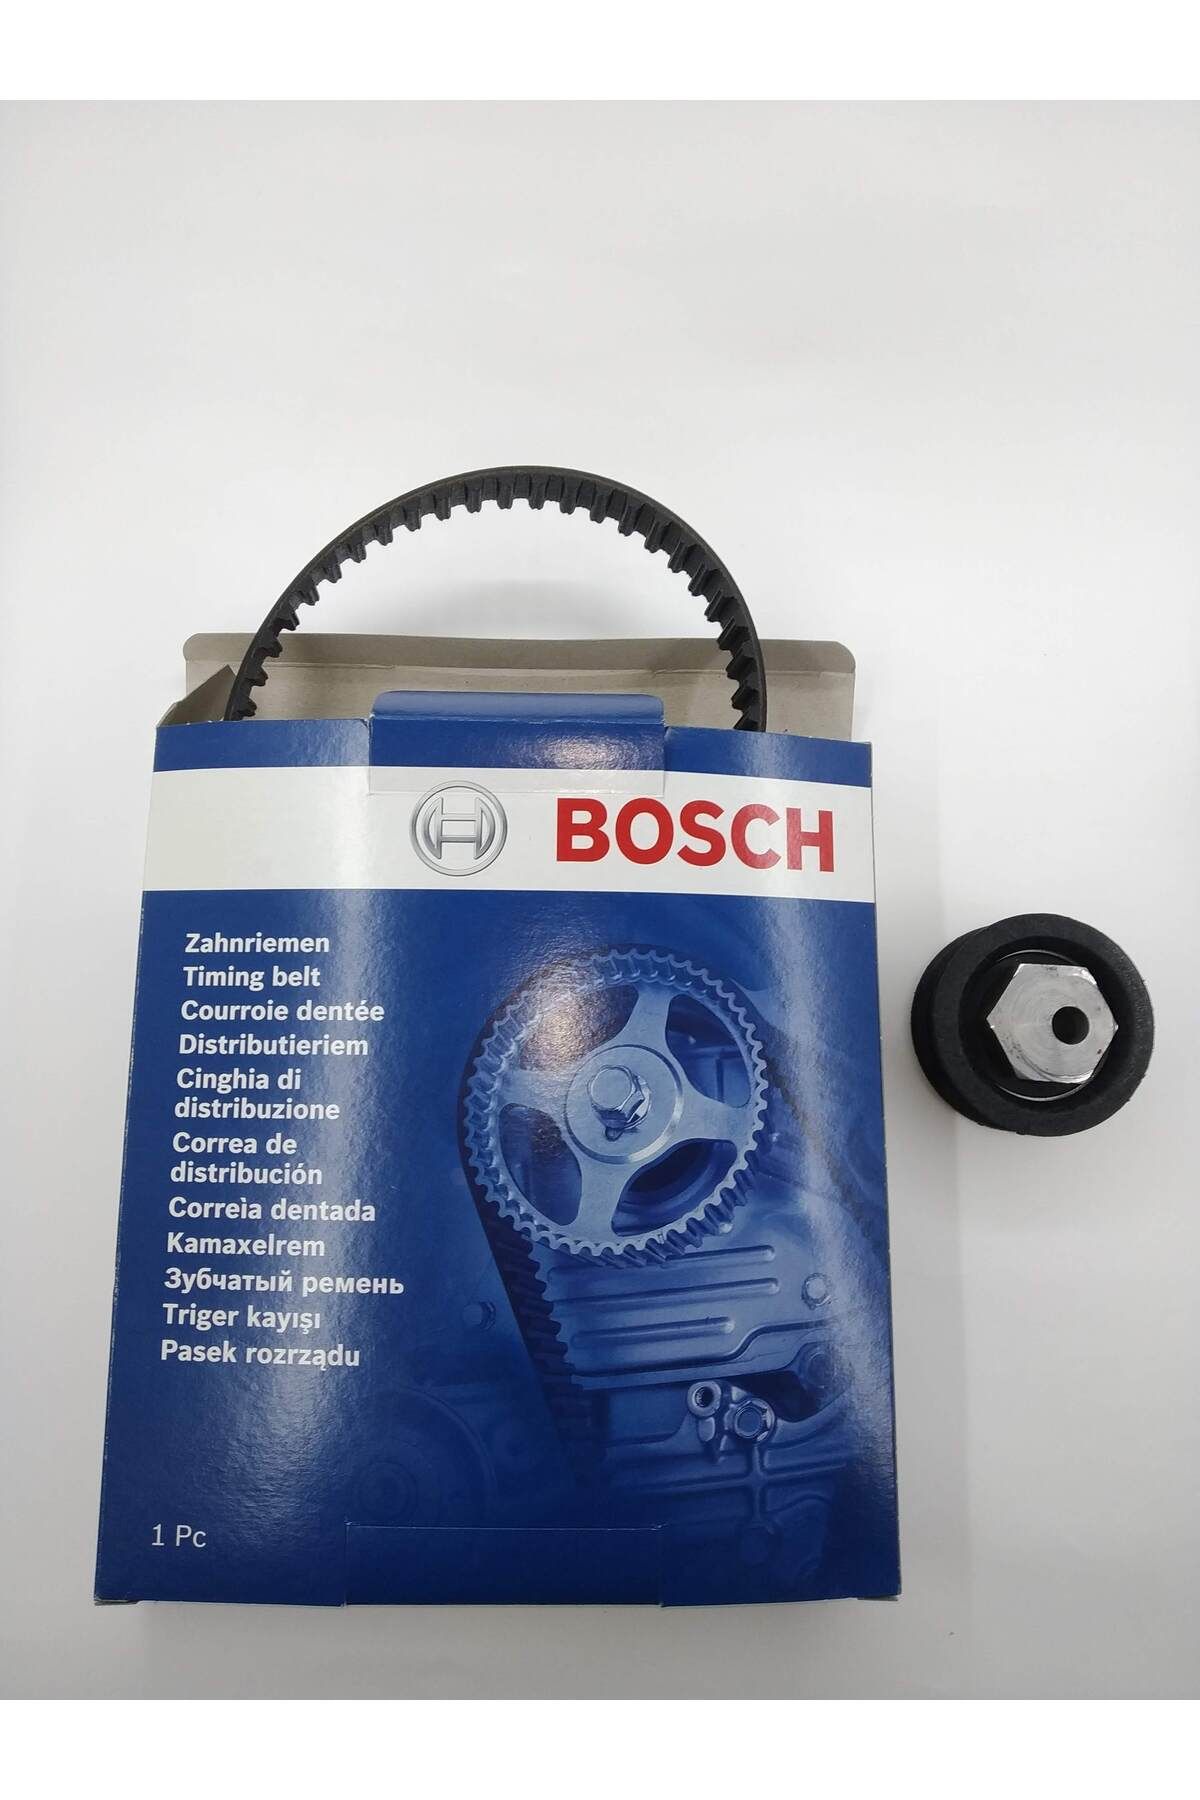 Bosch lada samara karburatörlü triger seti (tiger kayışı + gergi rulmanı)